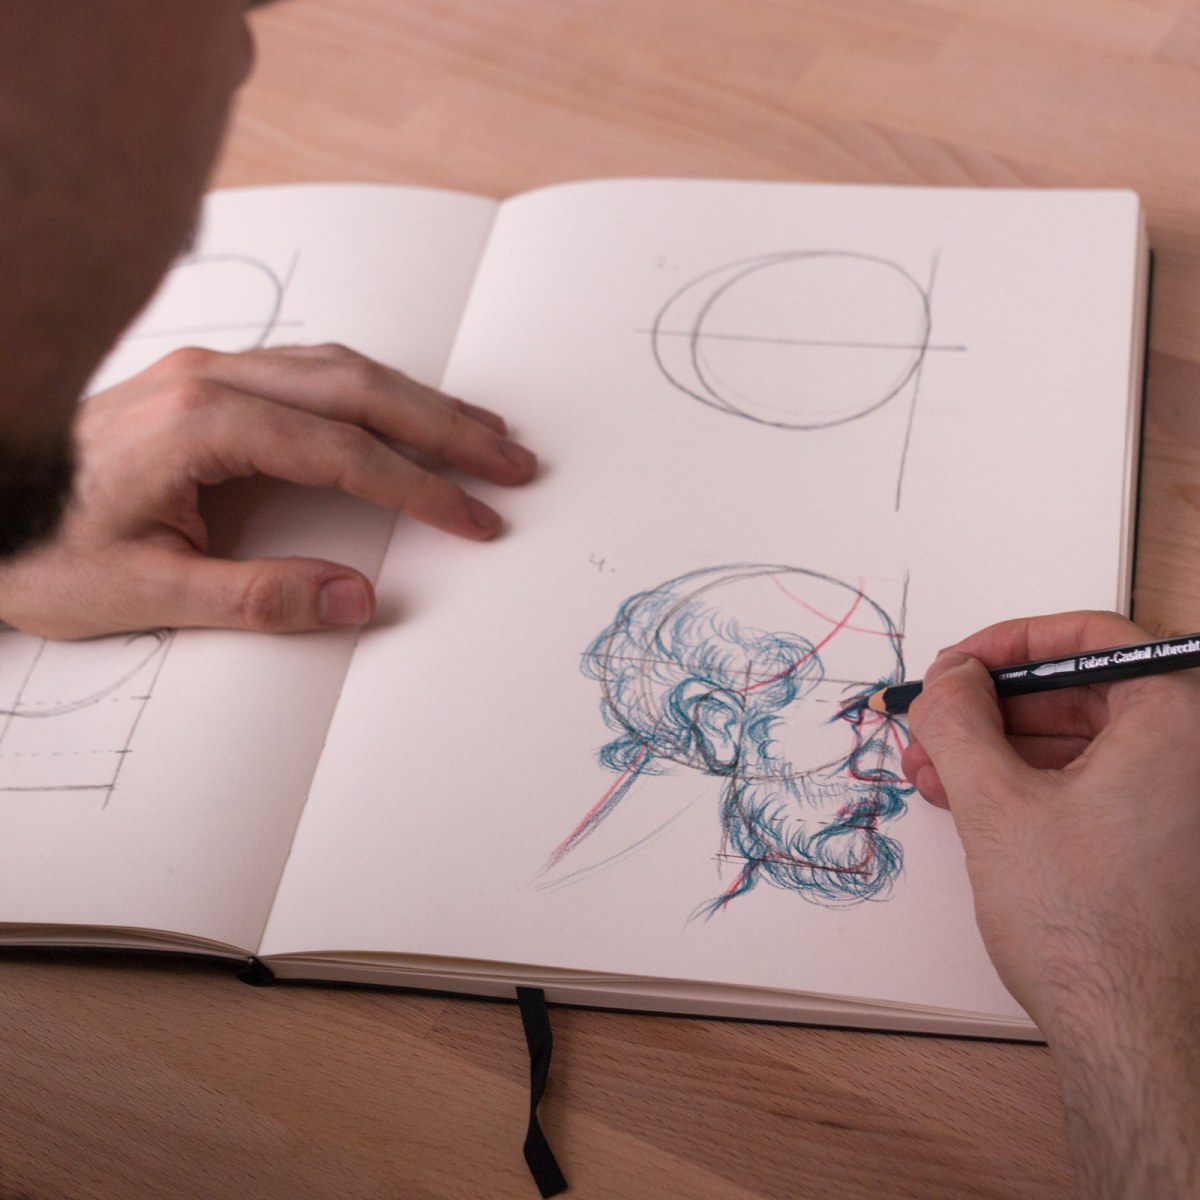 Cómo dibujar el cuerpo humano: 10 tutoriales gratis para principiantes |  Domestika